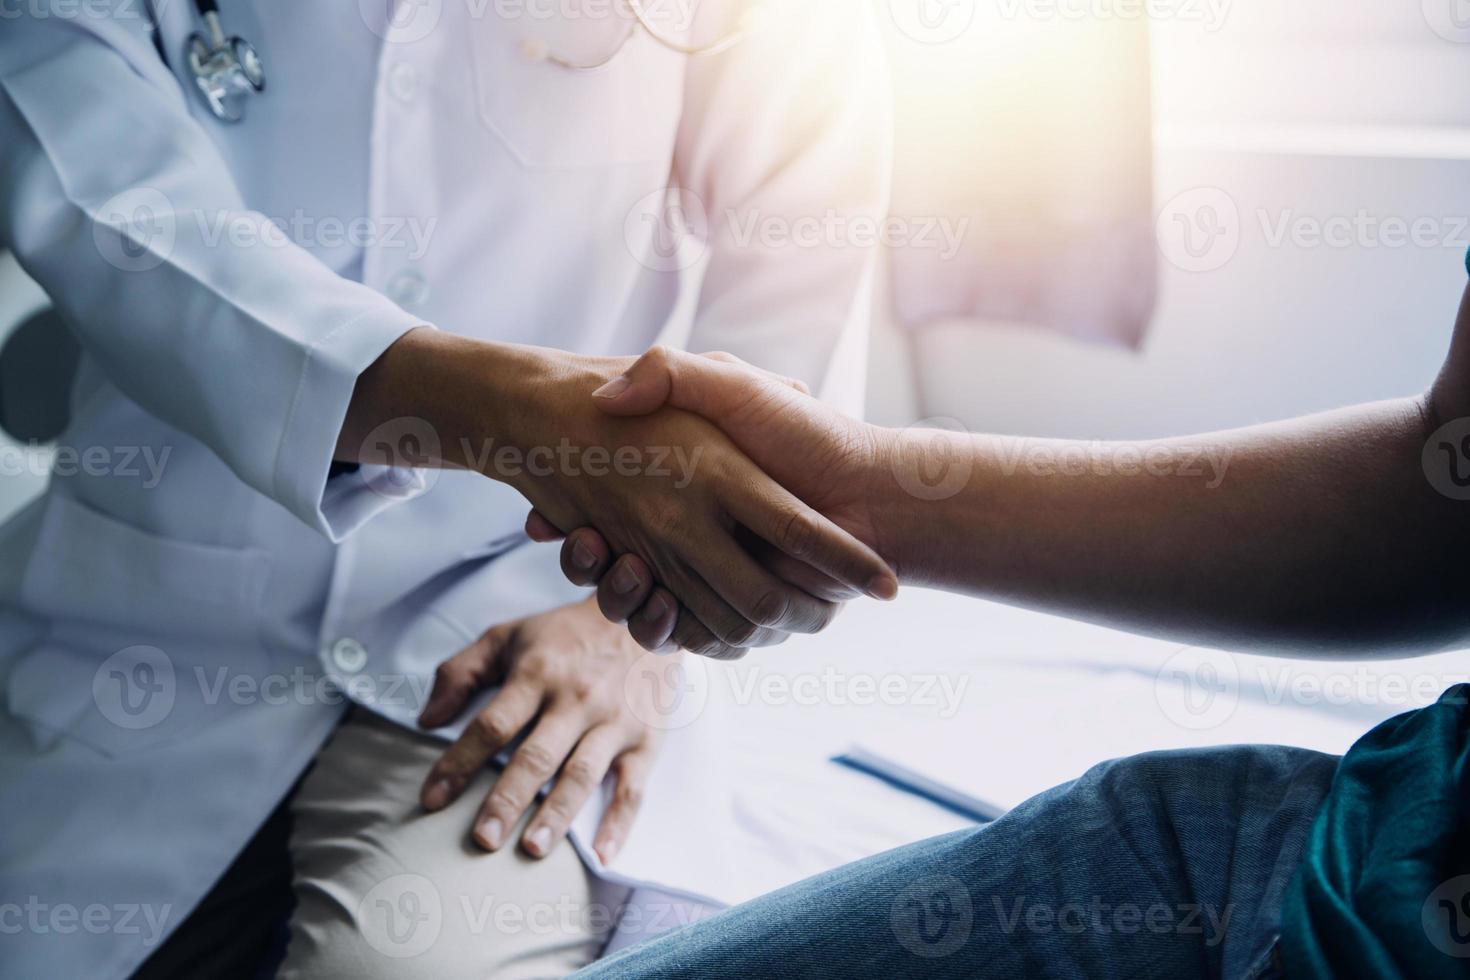 medico e paziente che discutono di qualcosa seduti al tavolo. concetto di medicina e assistenza sanitaria. medico e paziente foto